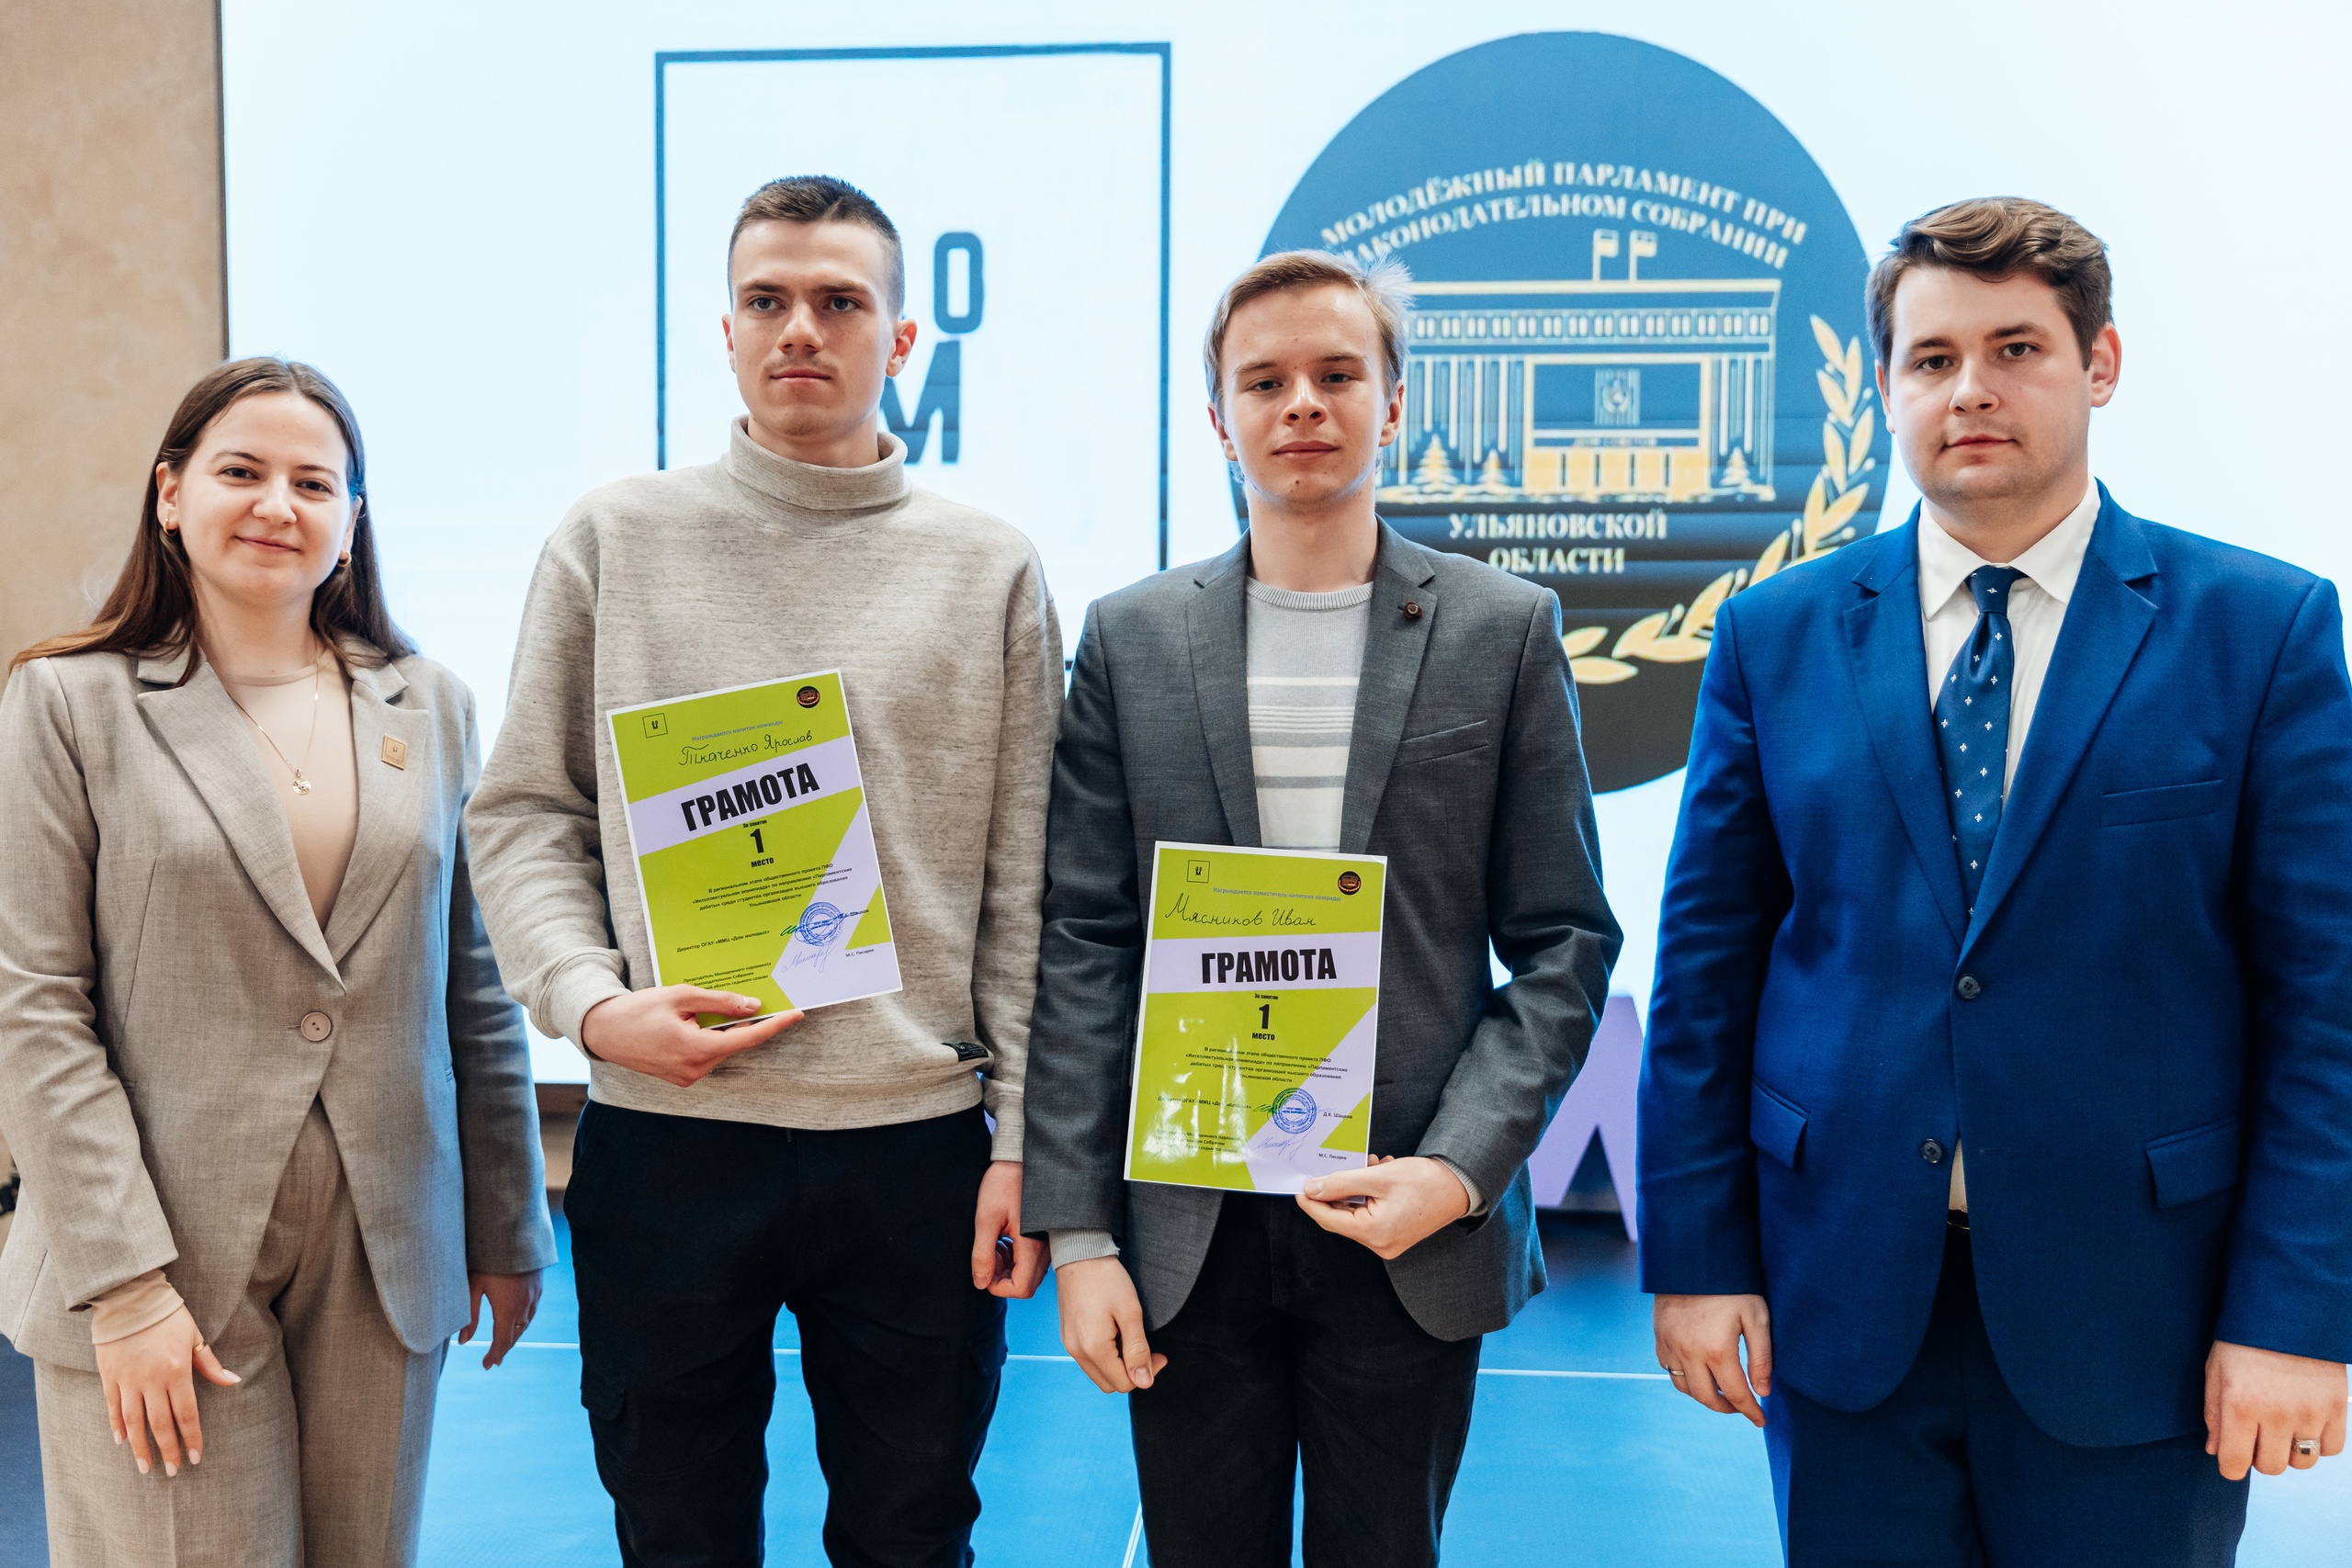 Студенты УлГТУ — победители регионального этапа интеллектуальной олимпиады: они представят область на окружном этапе в Мордовии